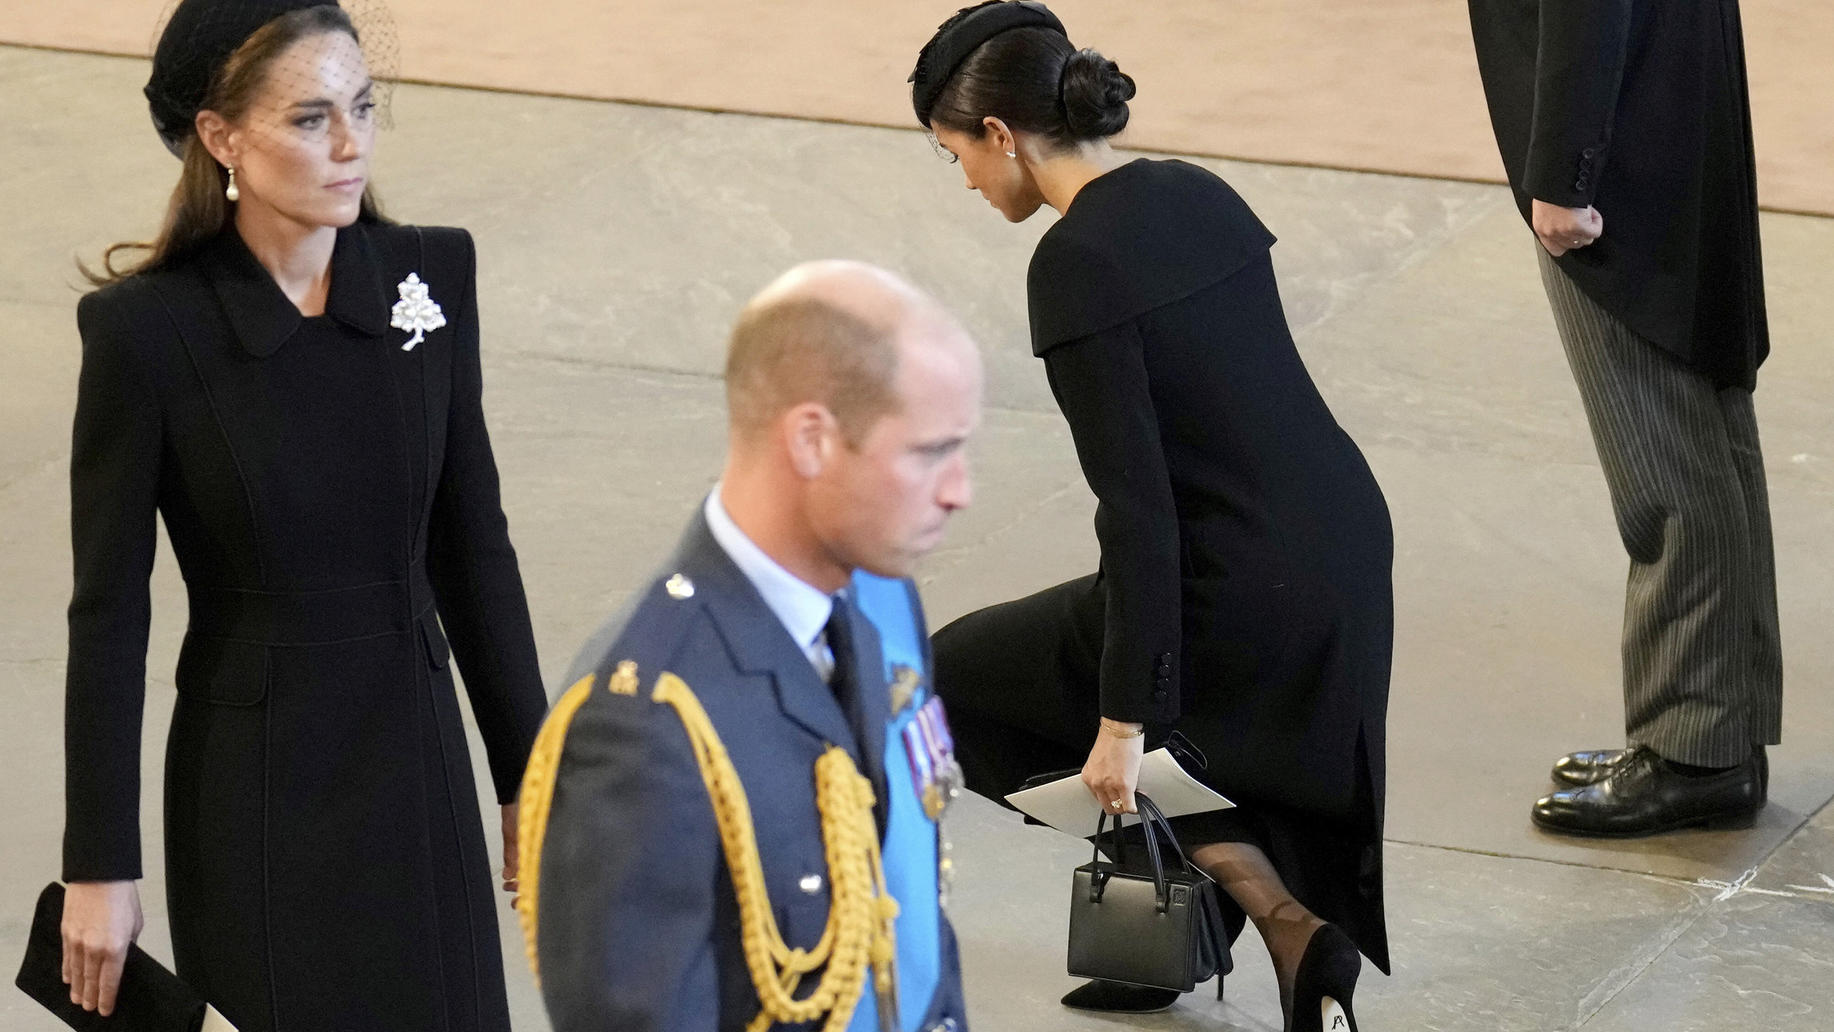 Ein Zeichen des Respekts: Meghans Kniefall vor dem Sarg der Queen